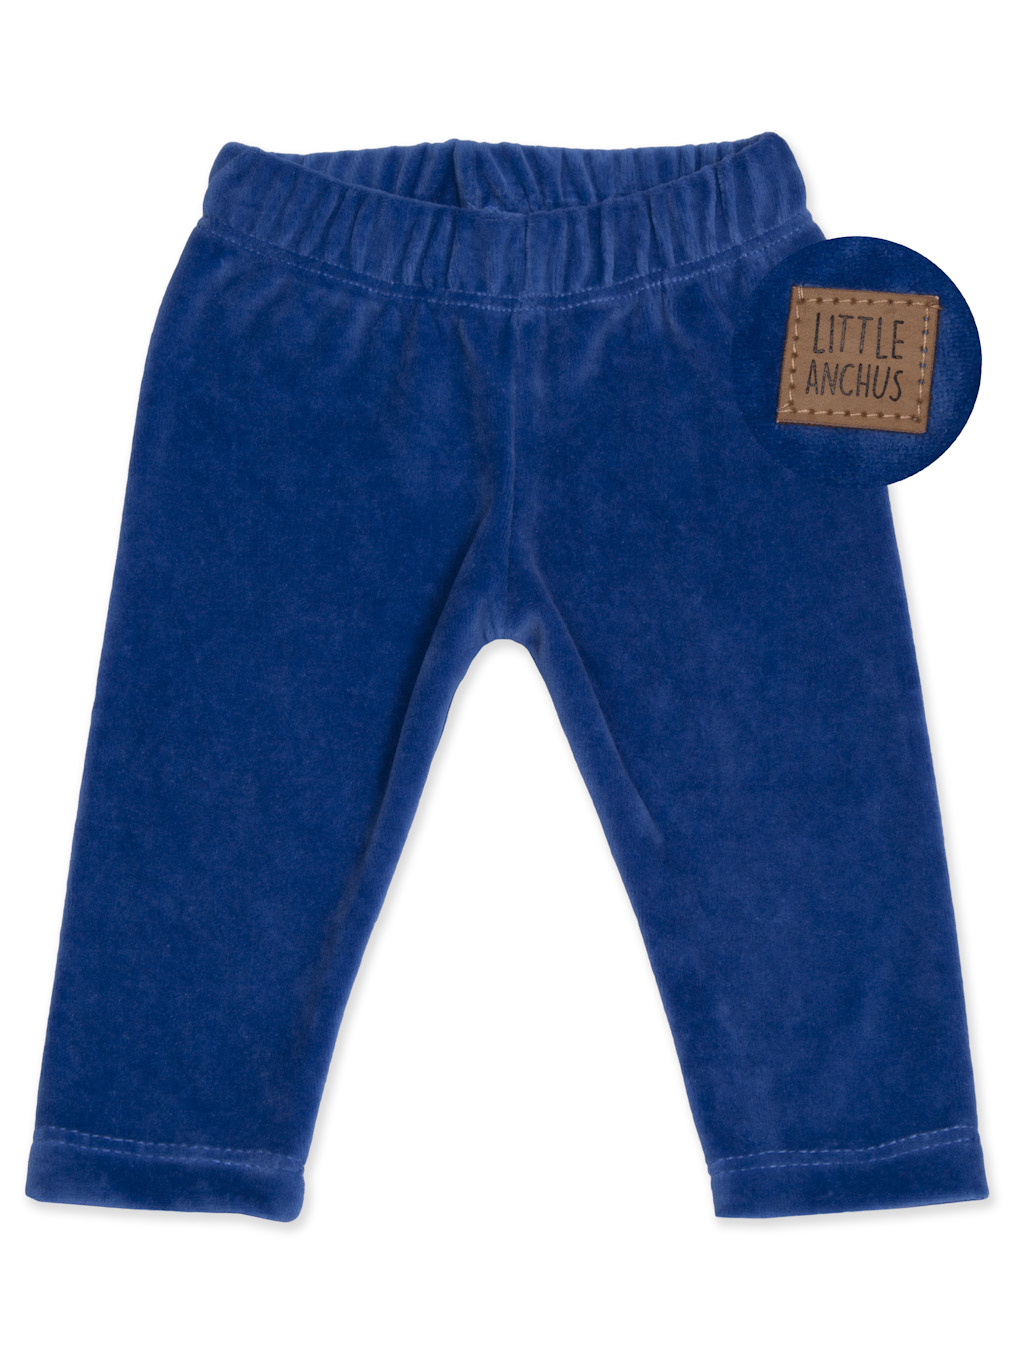 Pantalon Chupin Plush Azul